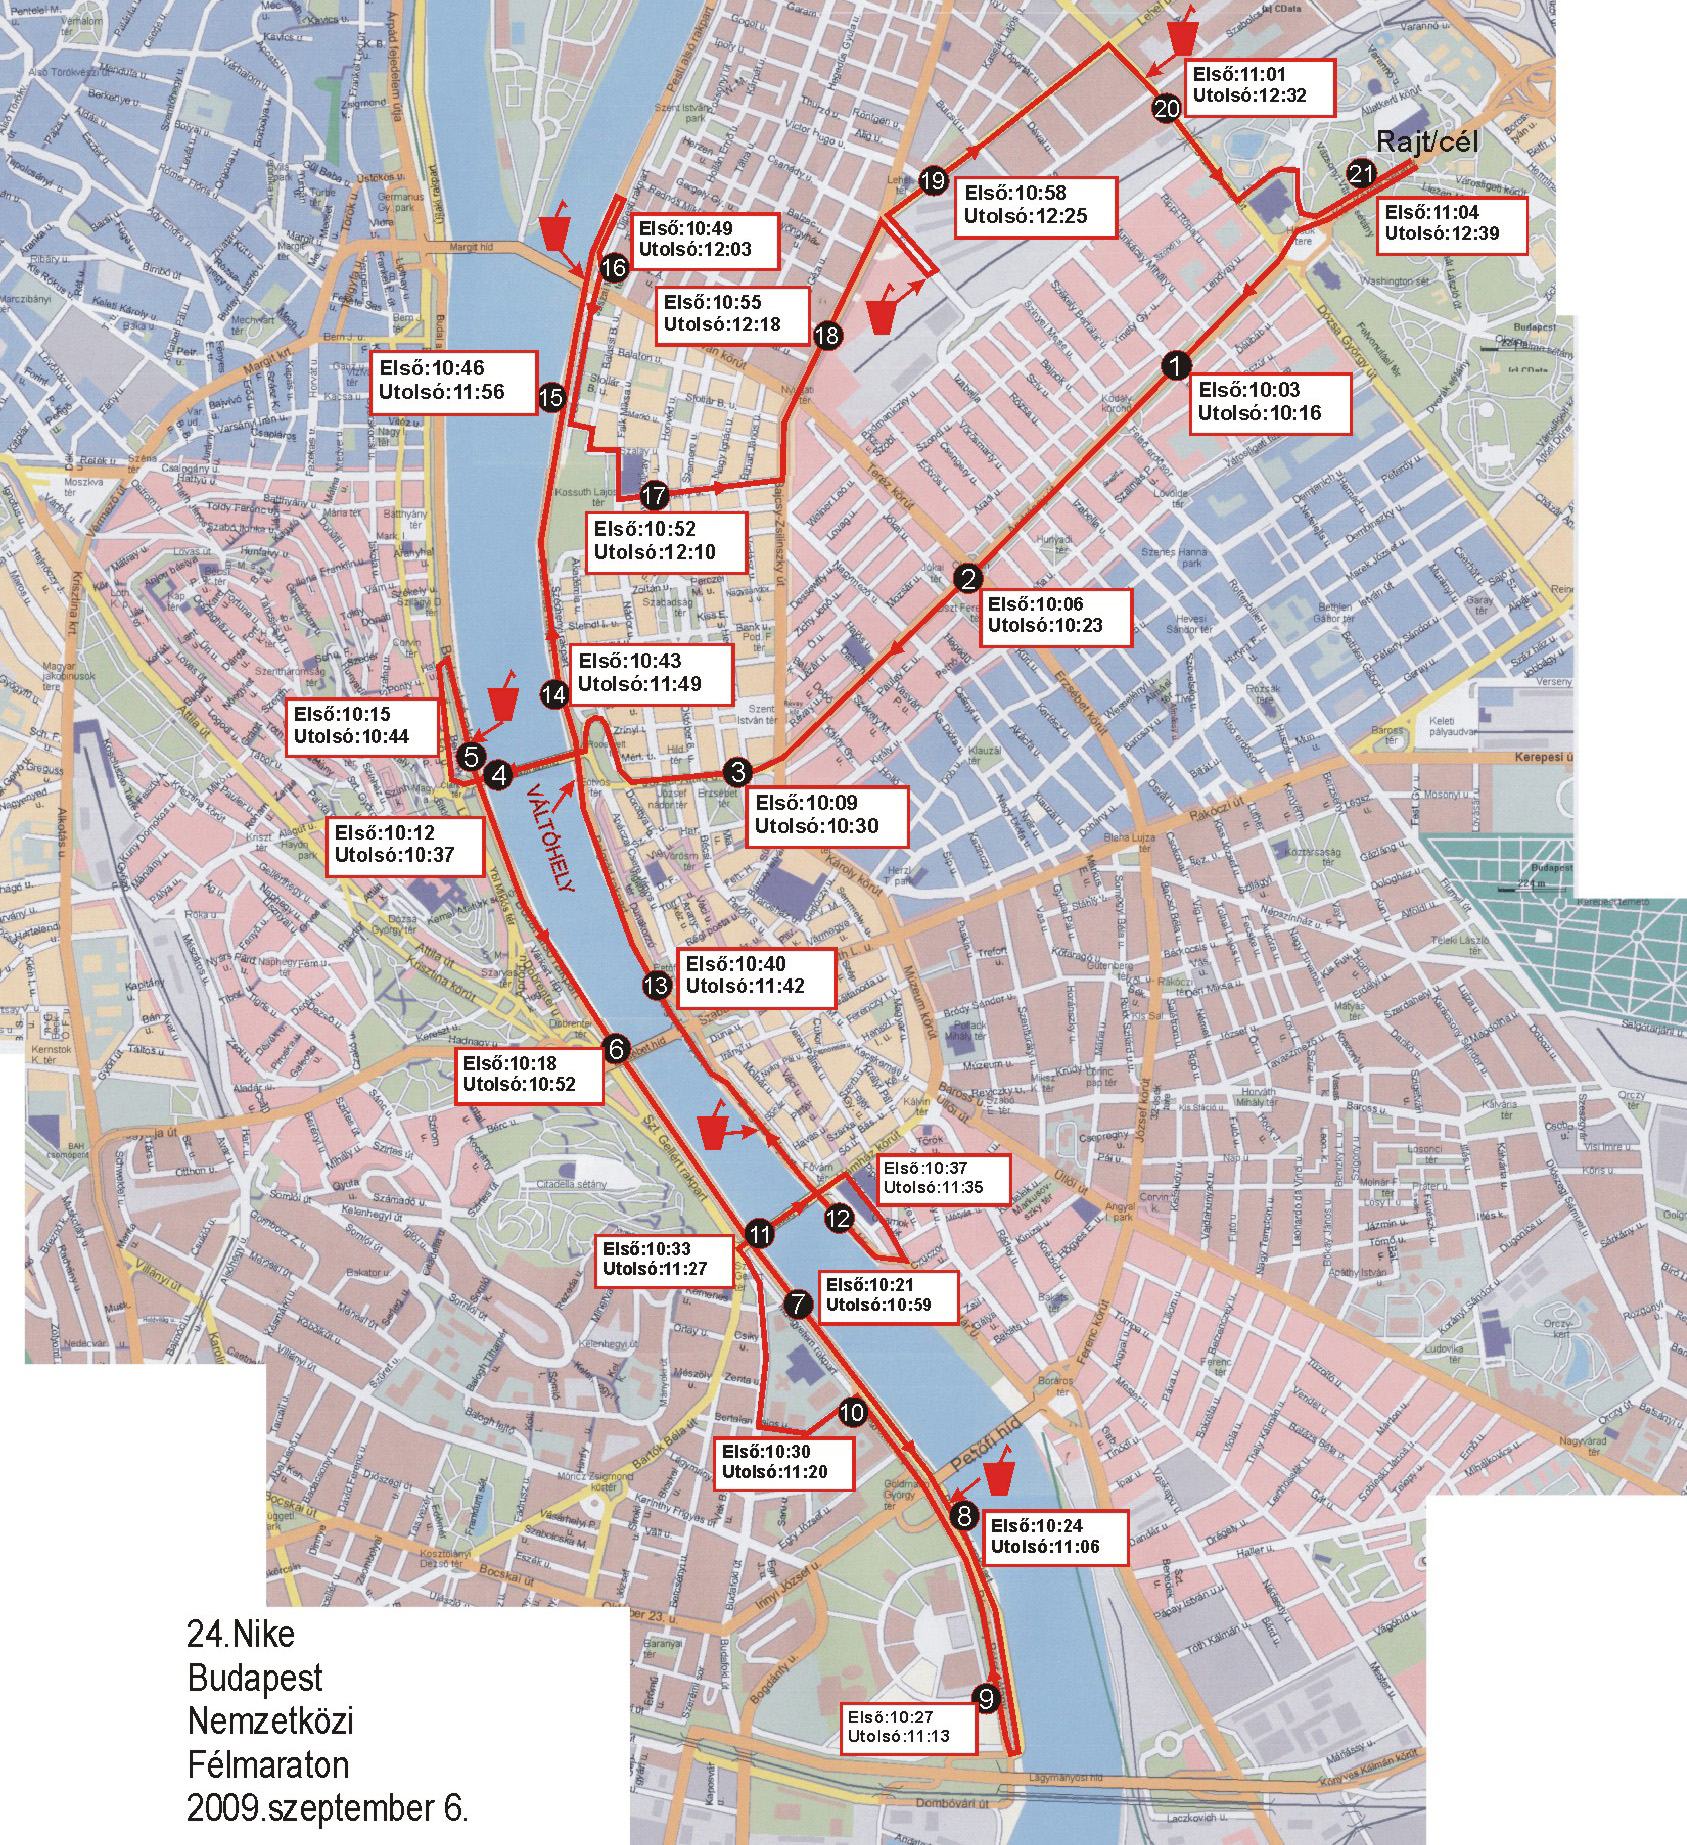 nyomtatható térkép budapest 24. Budapest Nemzetközi Félmaraton, Térkép   Futanet.hu nyomtatható térkép budapest